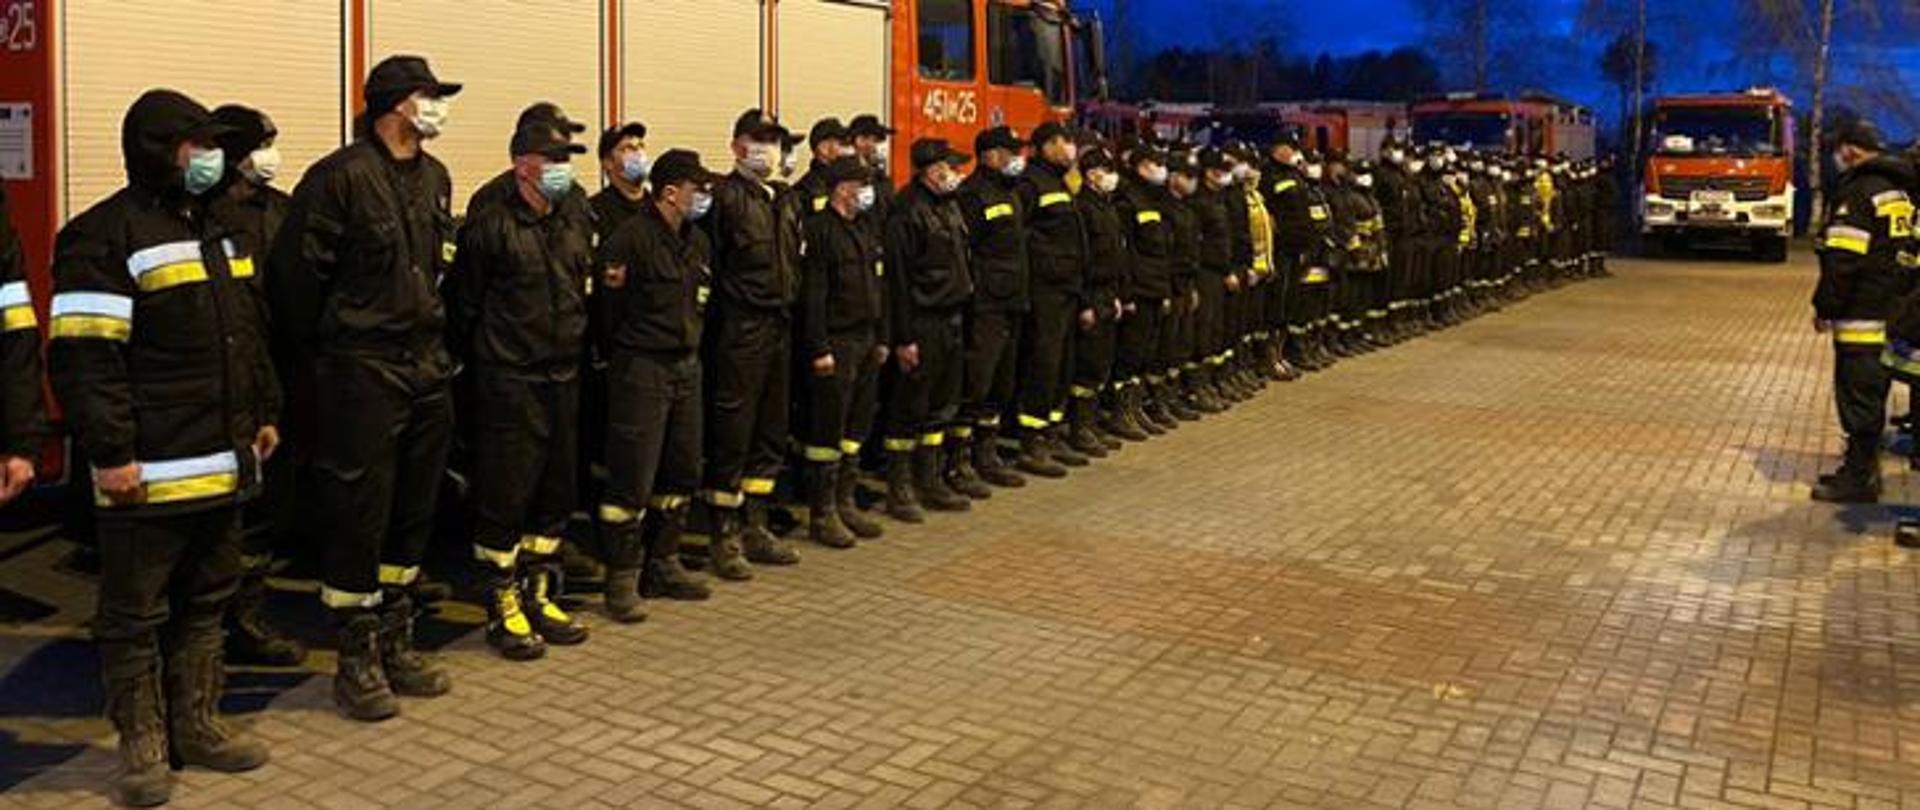 Na zdjęciu w porze nocnej widoczni strażacy w umundurowaniu czarnym służbowym za nimi samochody bojowe w kolorze czerwonym. Przed frontem szyku strażak również w ubraniu czarnym służbowym przeprowadza odprawę. 